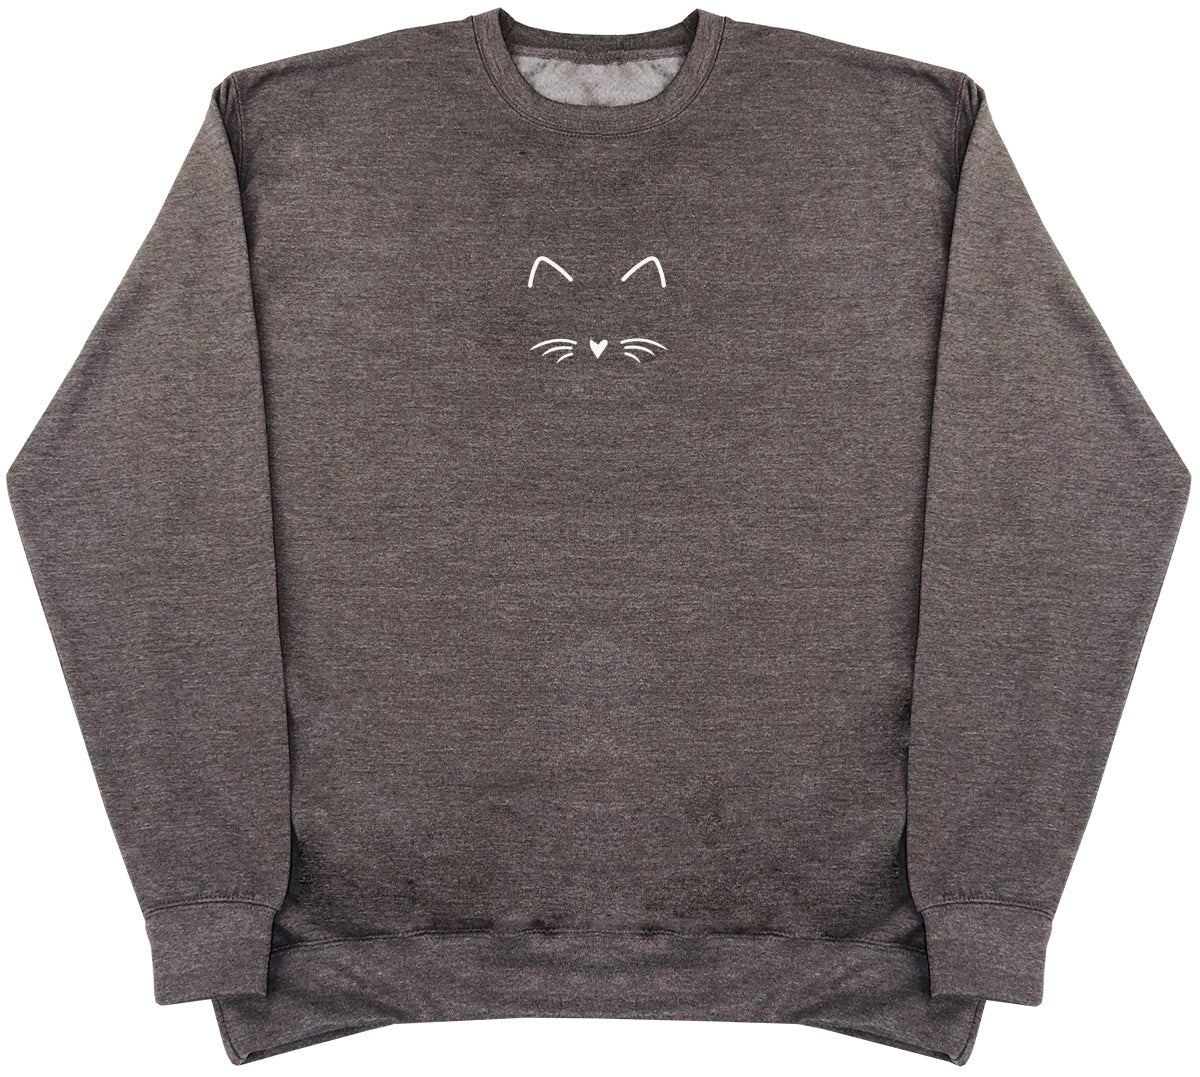 Cat Face - Huge Oversized Comfy Original Sweater